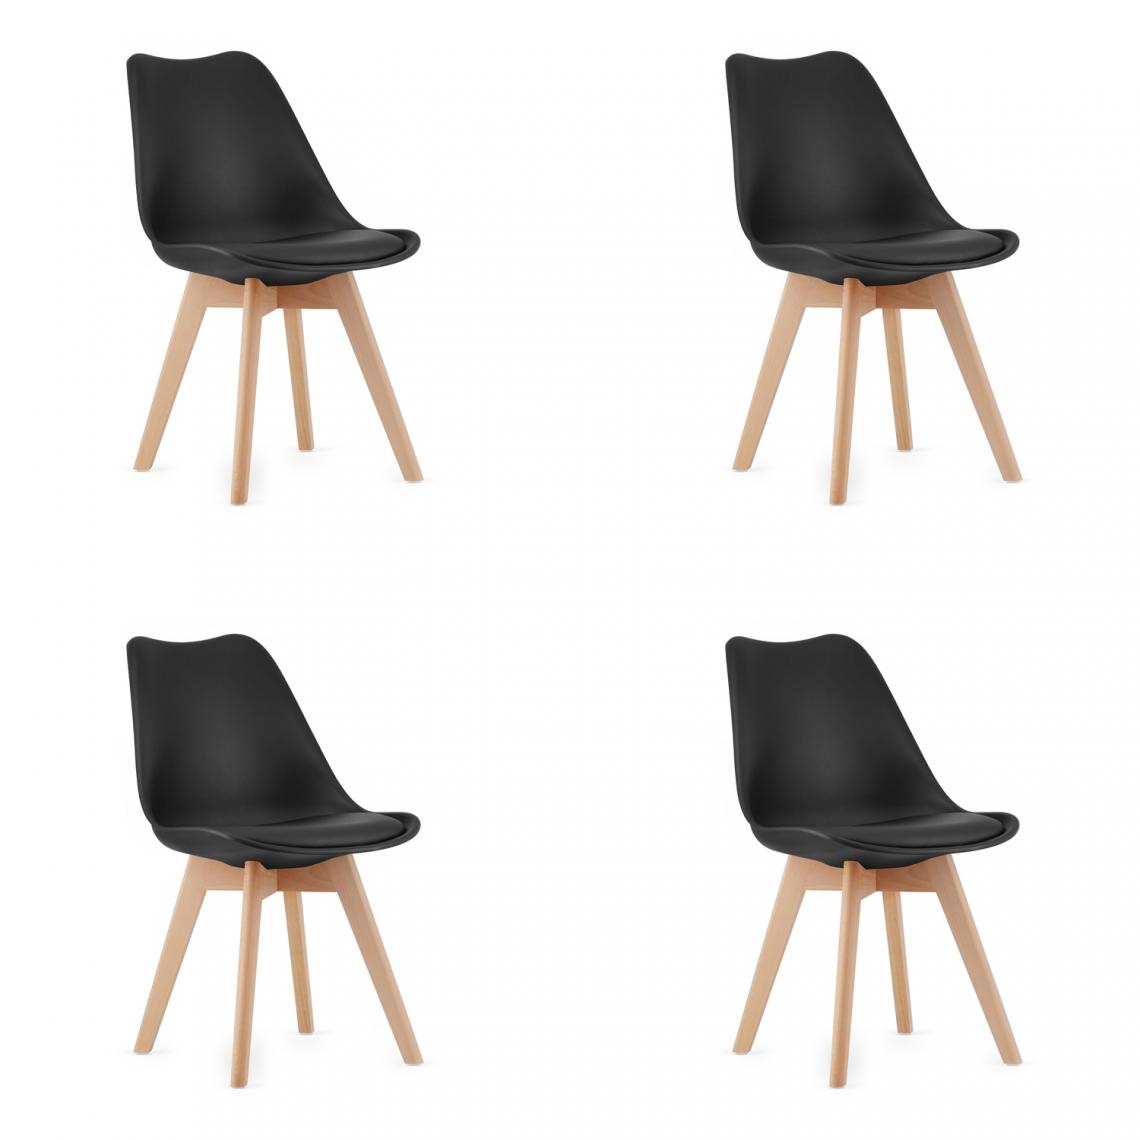 Hucoco - MARDI - Lot de 4 chaises style moderne salle à manger/cuisine - 82x48x43 cm - Chaise de salle à manger - Noir - Chaises